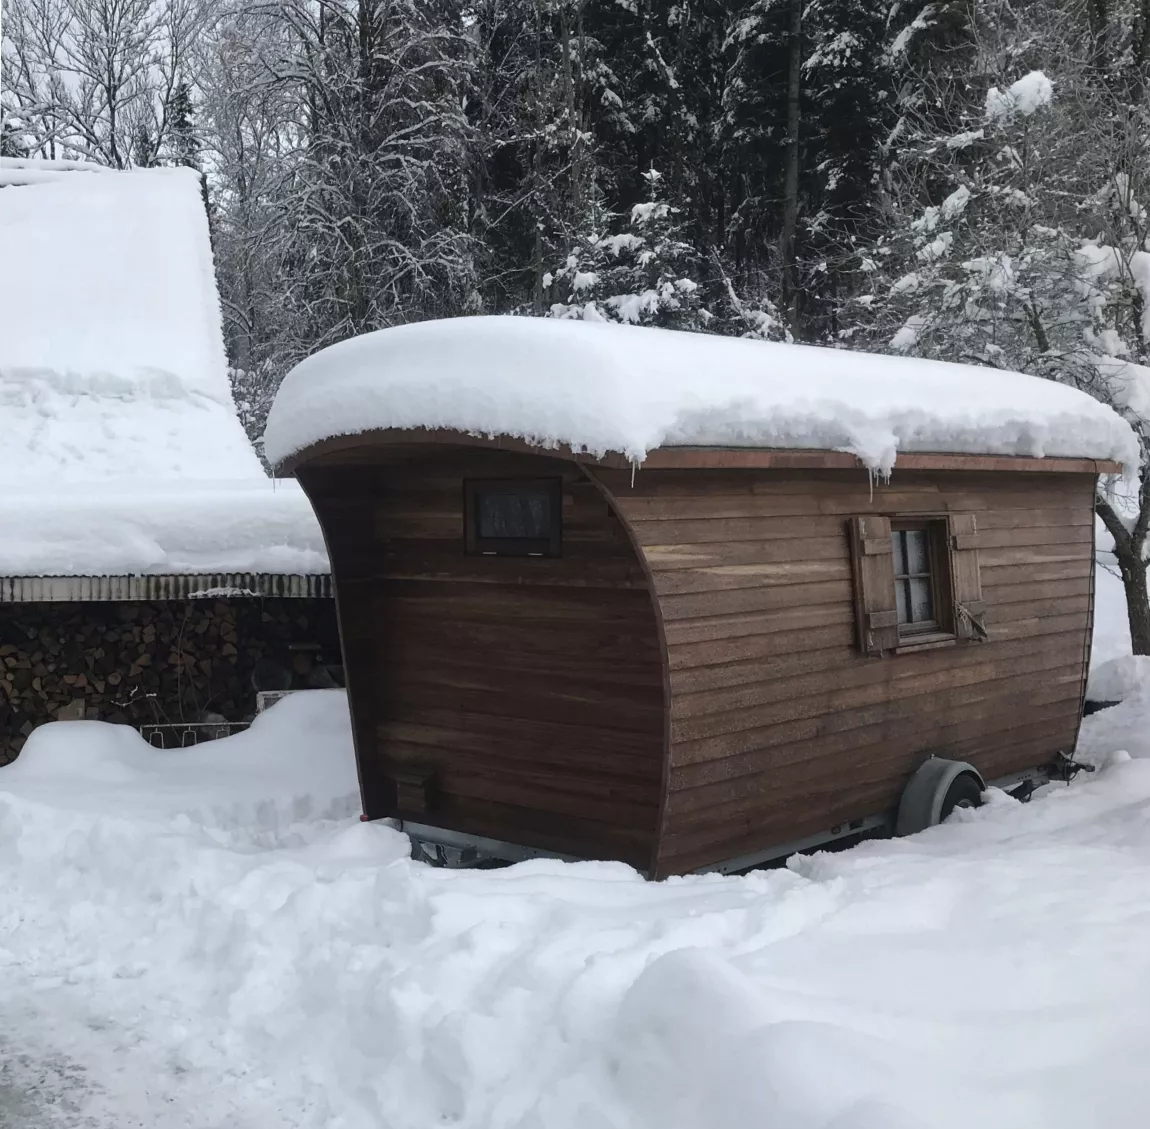 Stabiles Tannhäuschen im Schnee mit Fokus auf die Statik und Schneebelastung auf dem Dach